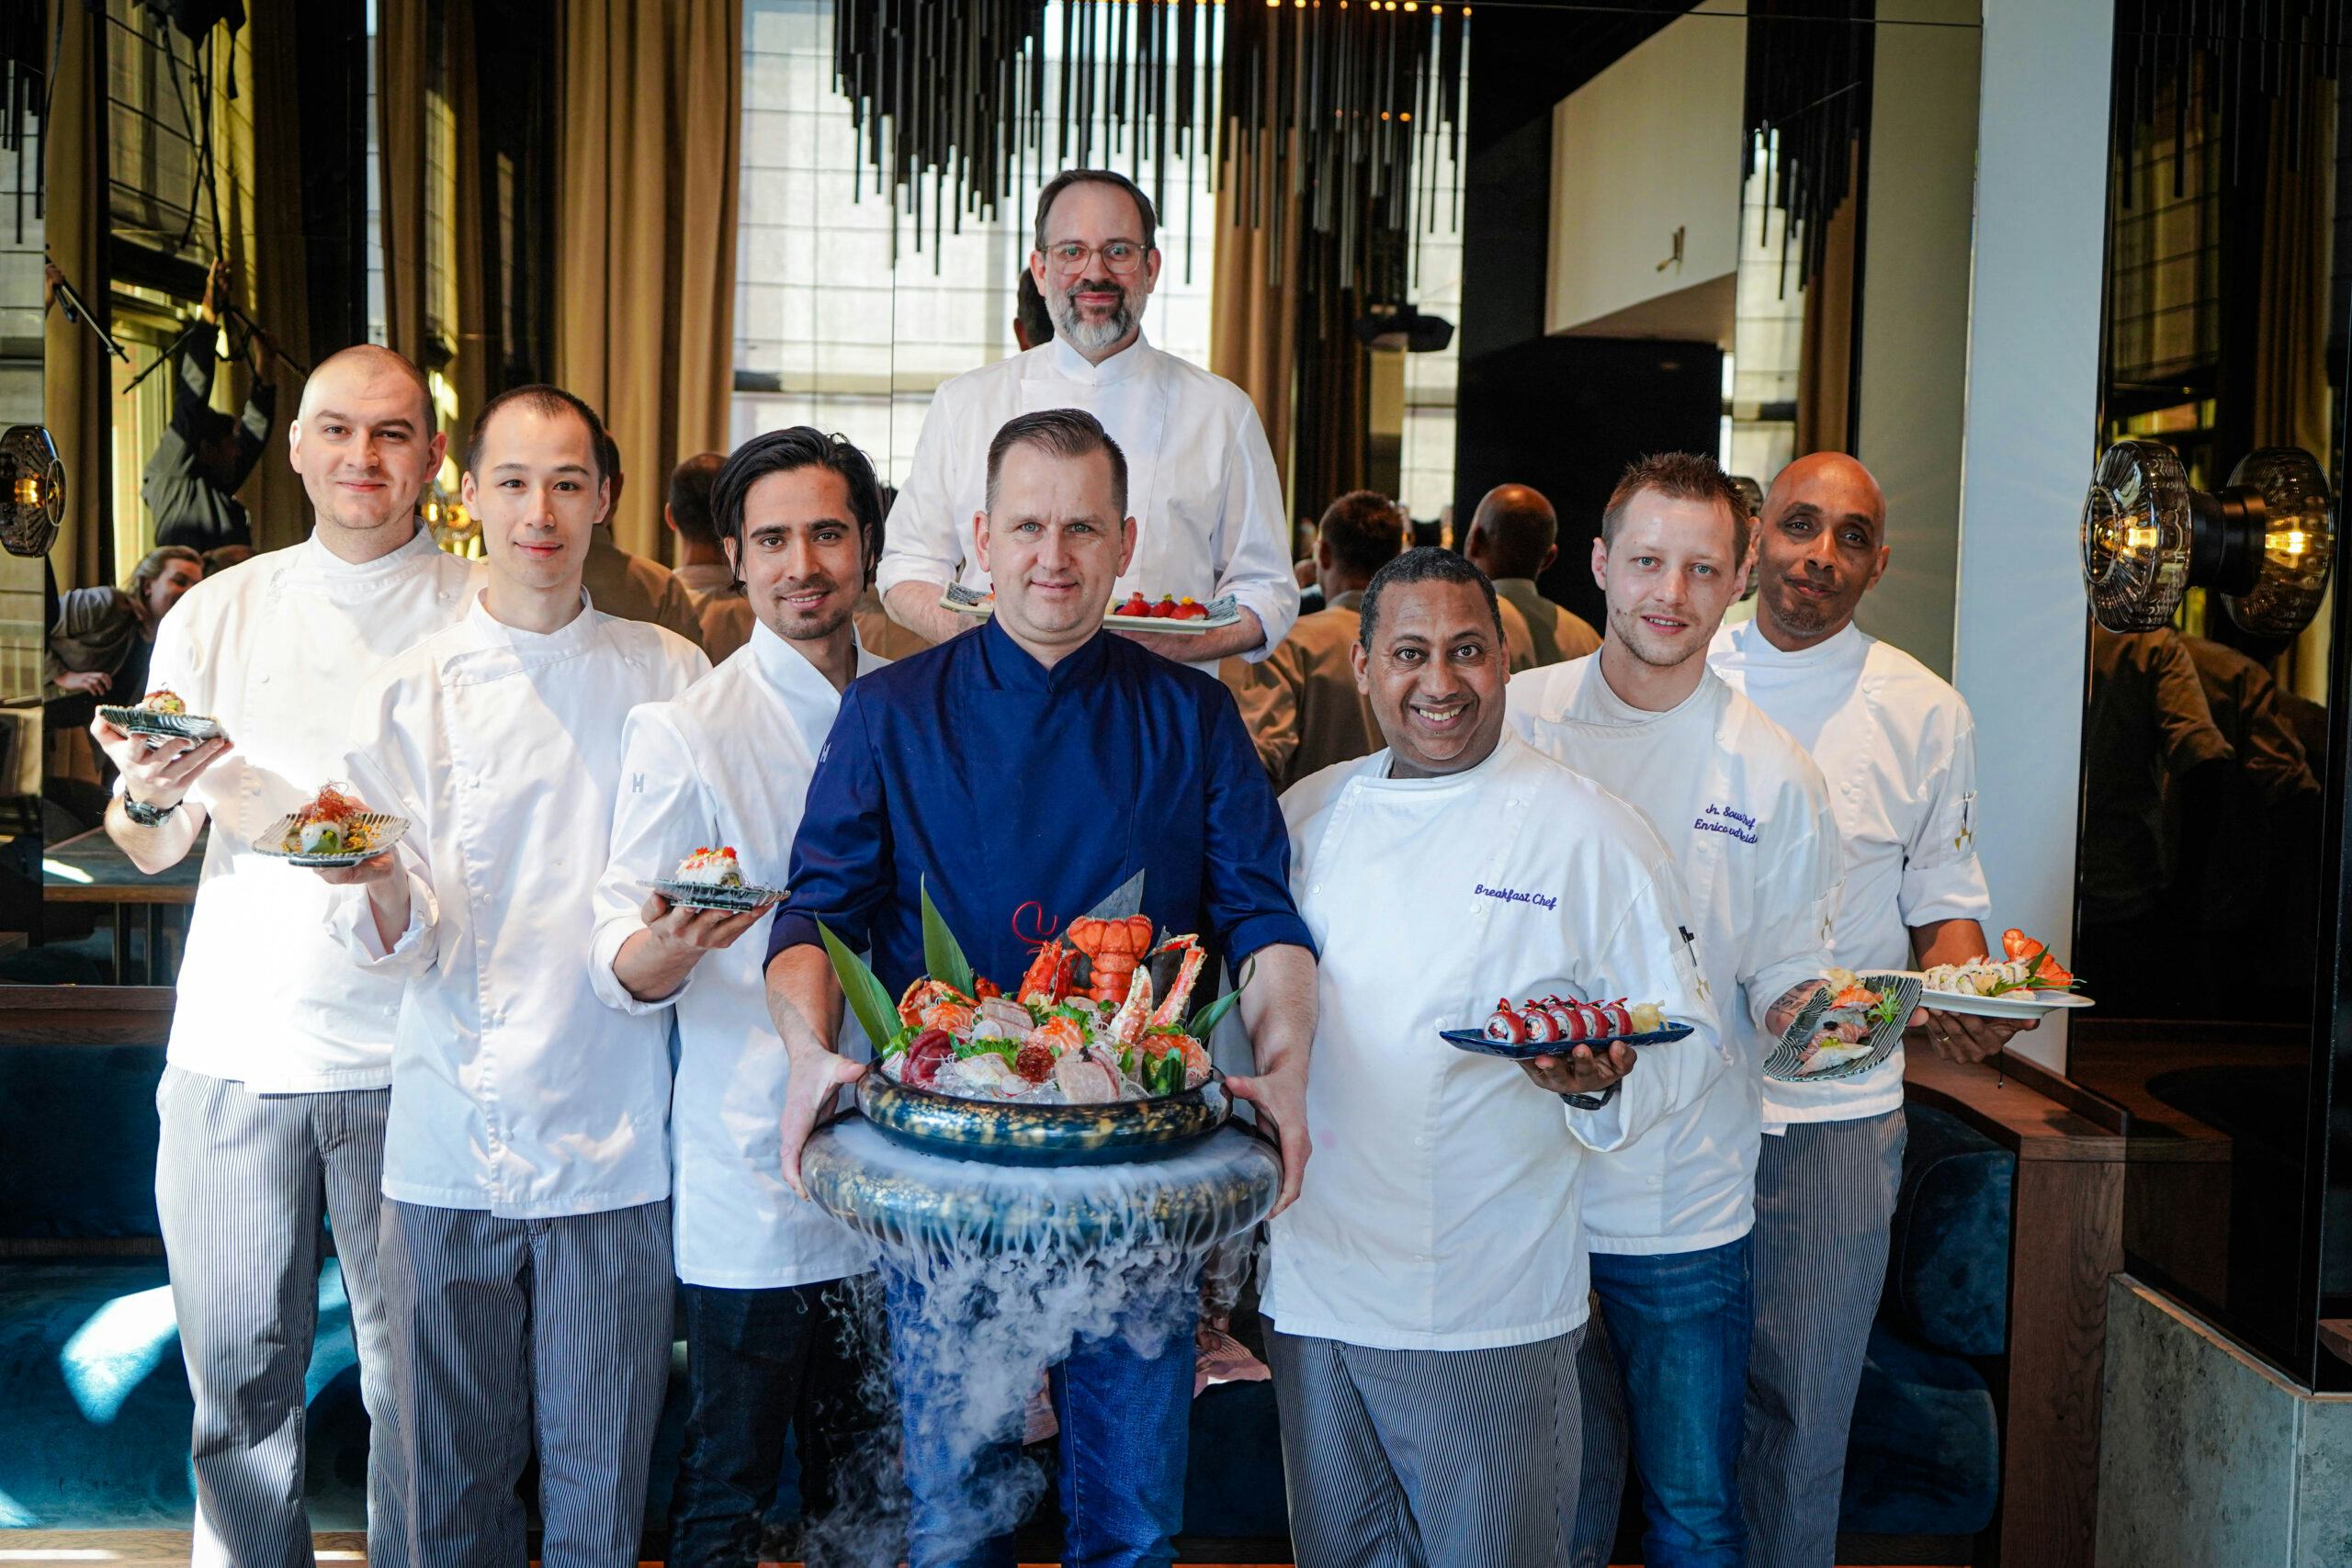 Executive Chef Frank Uphoff samen met zijn team 
© Pascale van Reijn